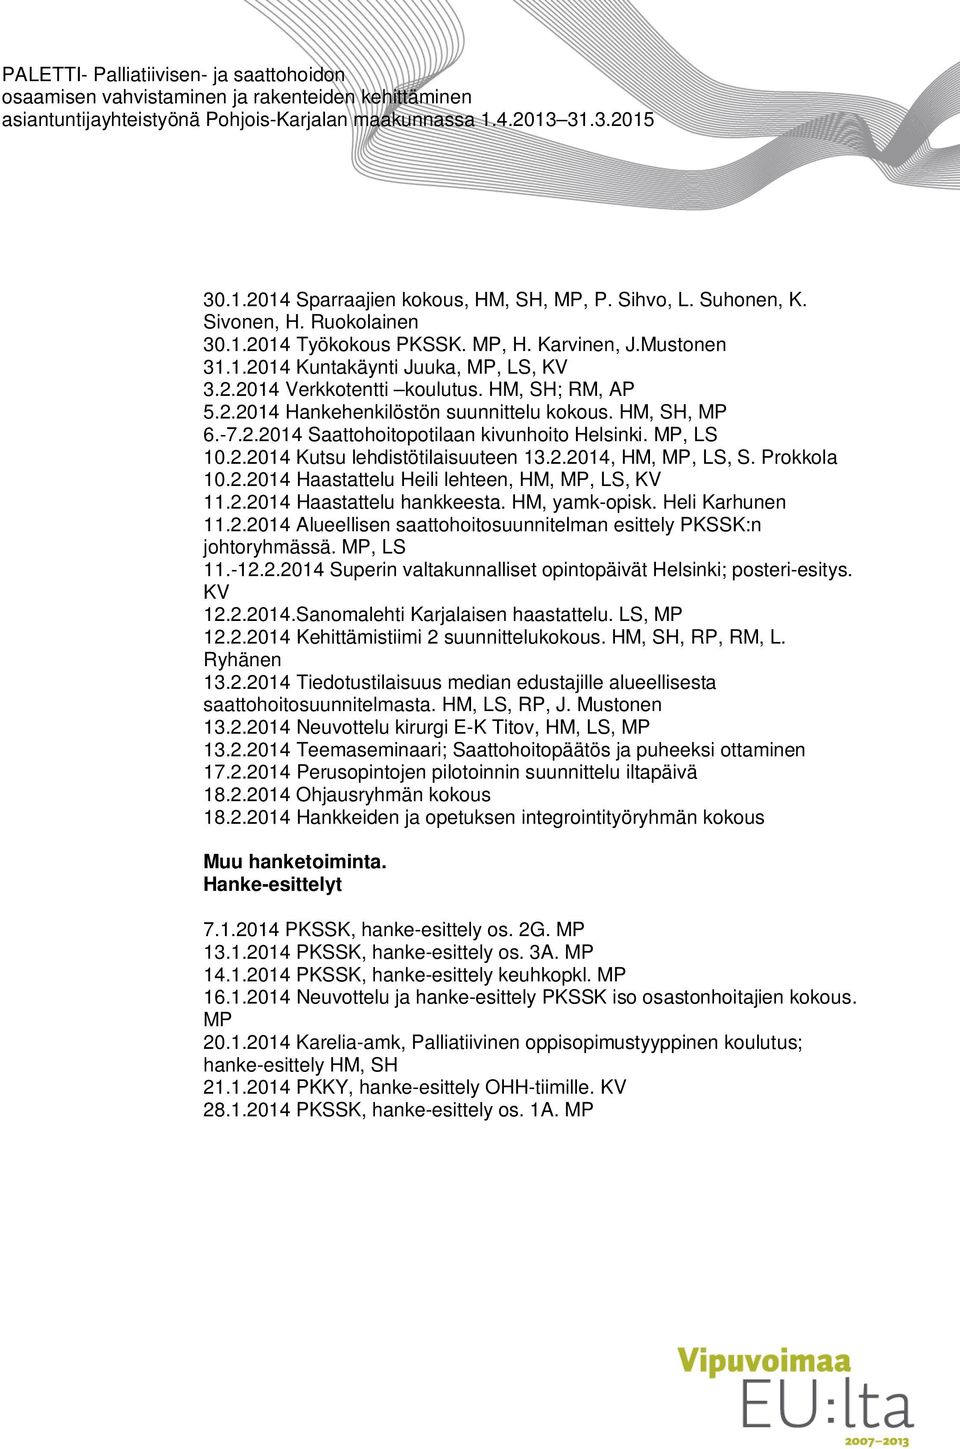 Prokkola 10.2.2014 Haastattelu Heili lehteen, HM, MP, LS, KV 11.2.2014 Haastattelu hankkeesta. HM, yamk-opisk. Heli Karhunen 11.2.2014 Alueellisen saattohoitosuunnitelman esittely PKSSK:n johtoryhmässä.